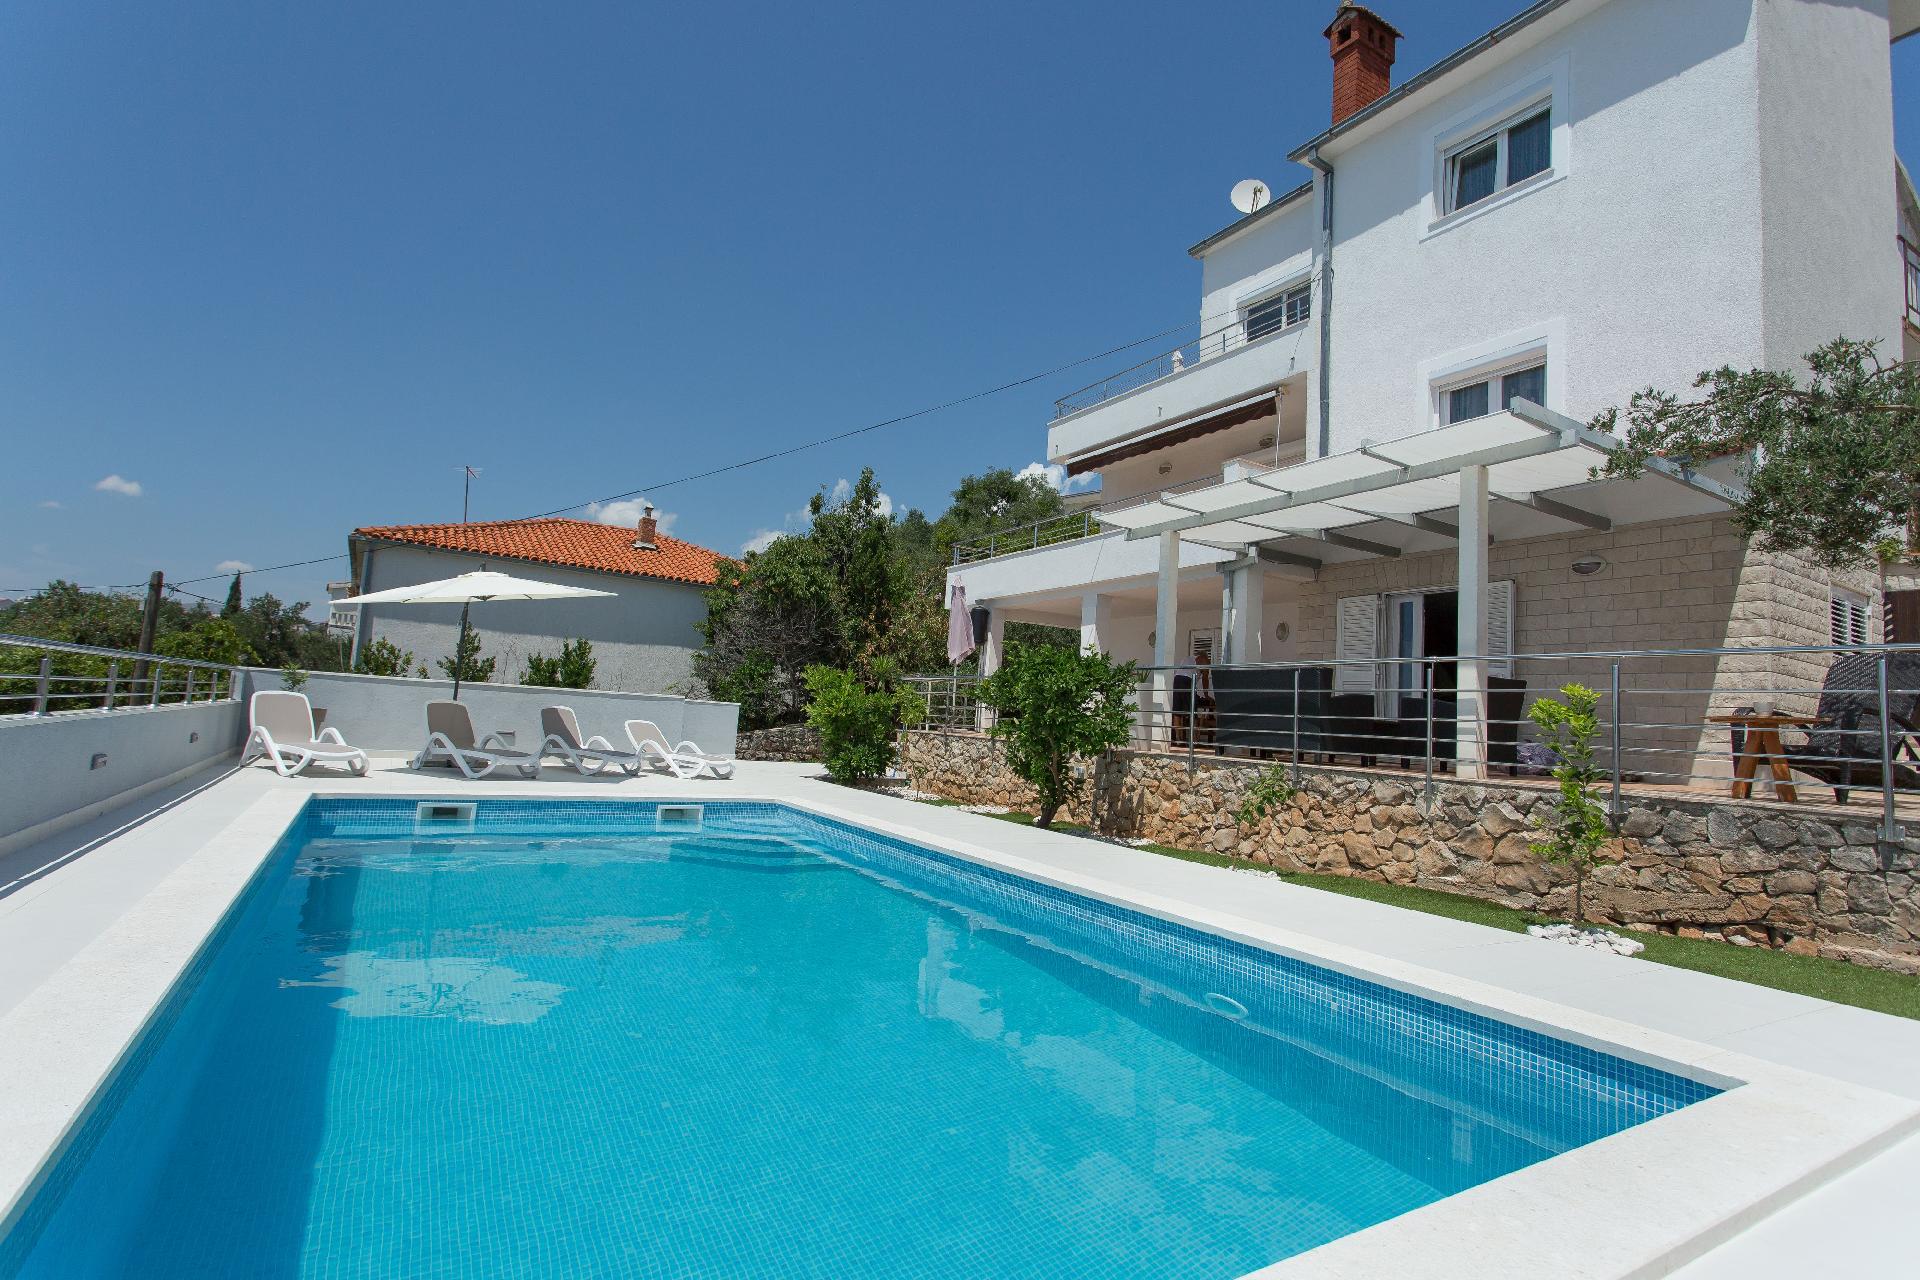 Ferienwohnung für 5 Personen ca. 65 m² i Ferienwohnung in Dalmatien